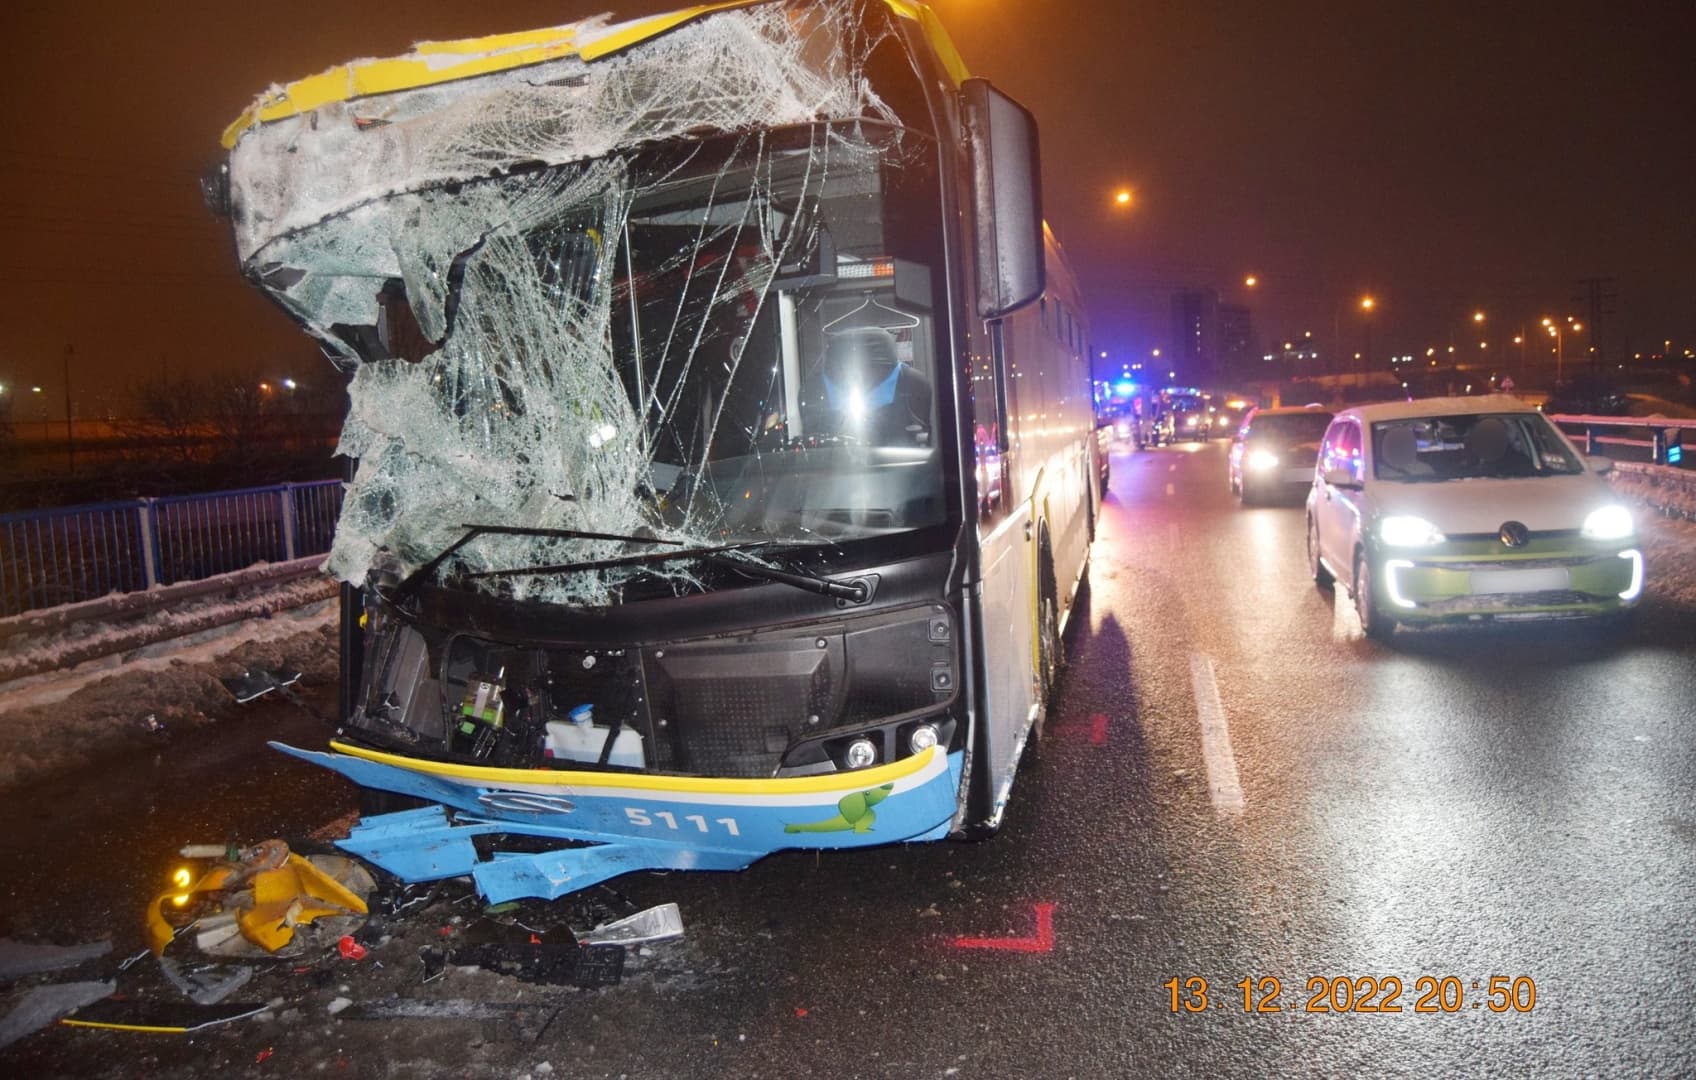 SÚLYOS BALESET: Szóróautónak ütközött a városi tömegközlekedés autóbusza, sokan megsérültek